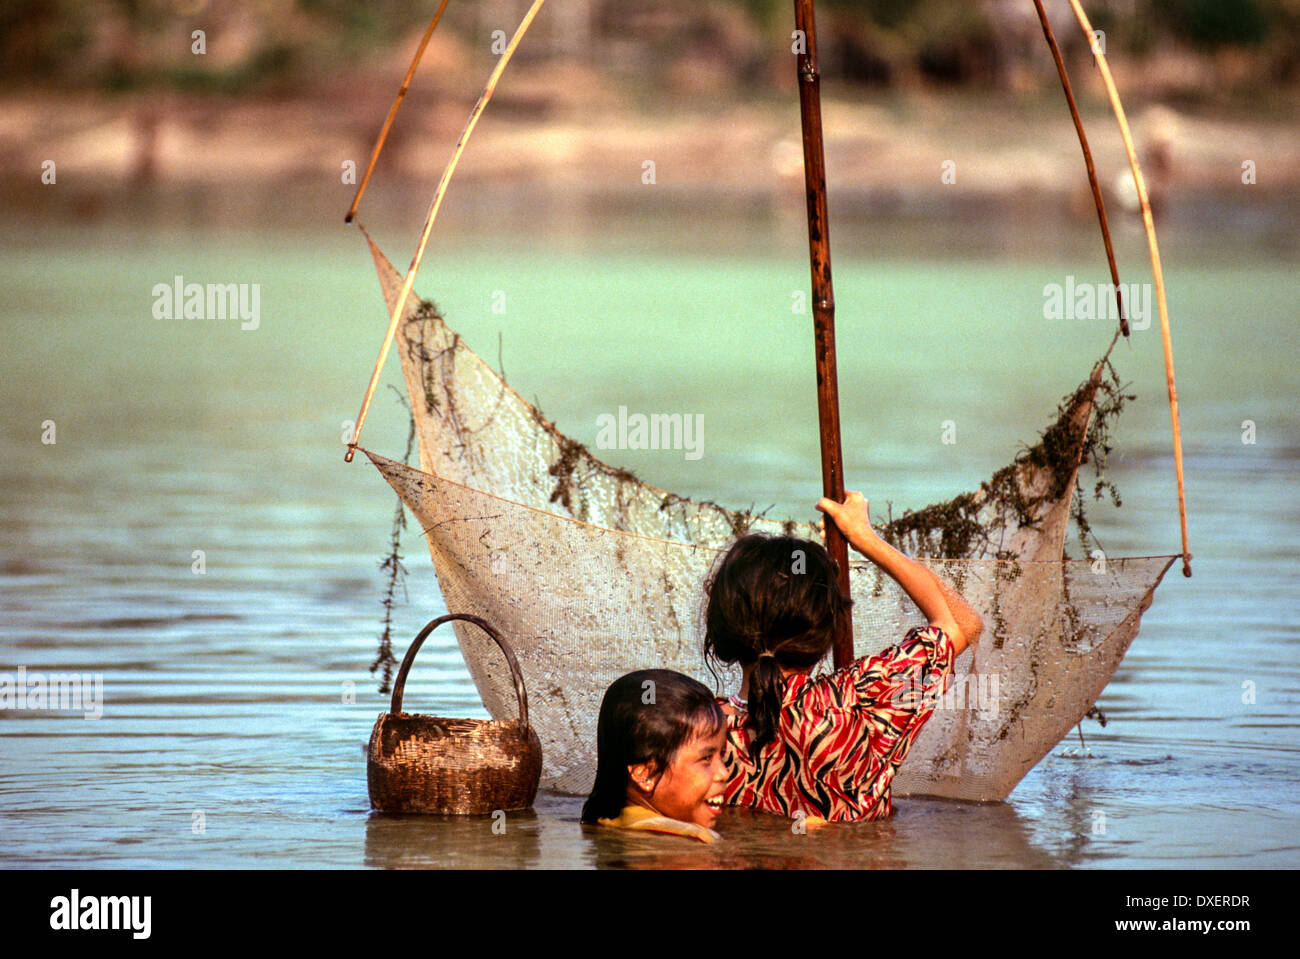 Laos niños red de pesca cañas de bambú árboles de la ribera del río sol piscina de agua azul Foto de stock